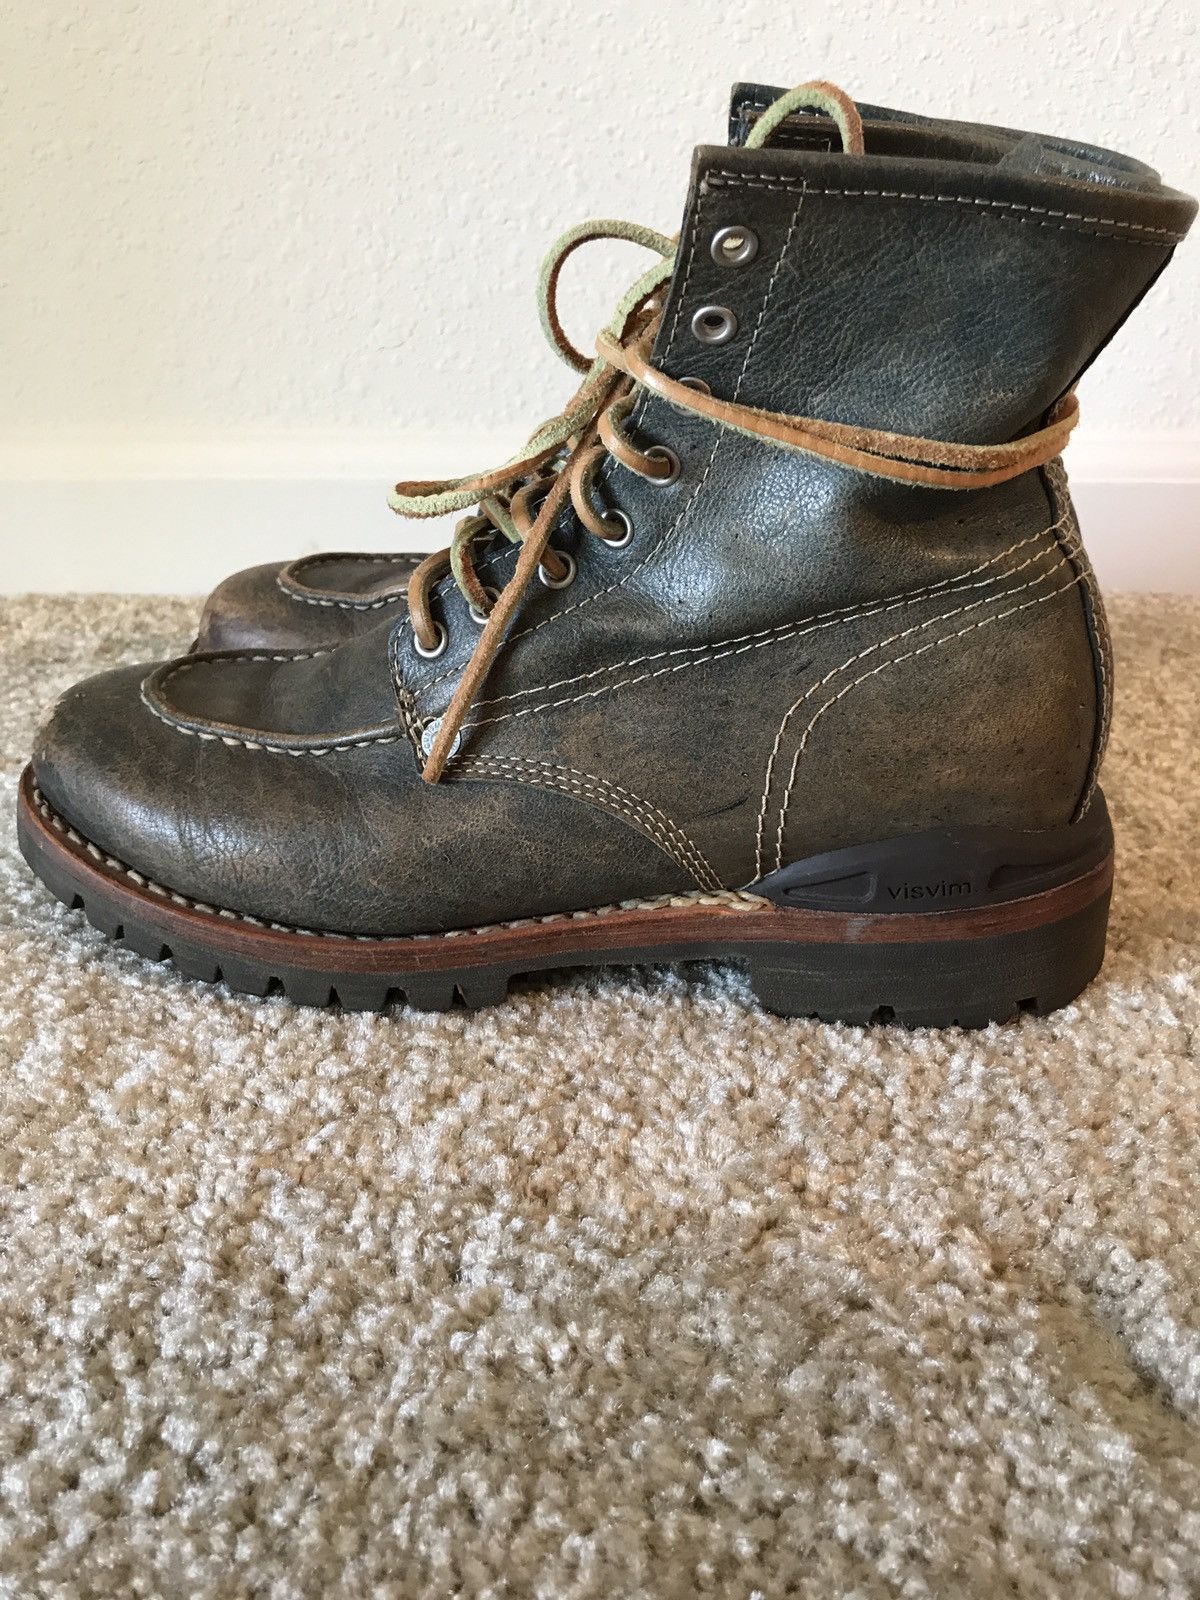 Visvim Visvim Vanguard Boots Folk Gray Size US 9 / EU 42 - 5 Thumbnail